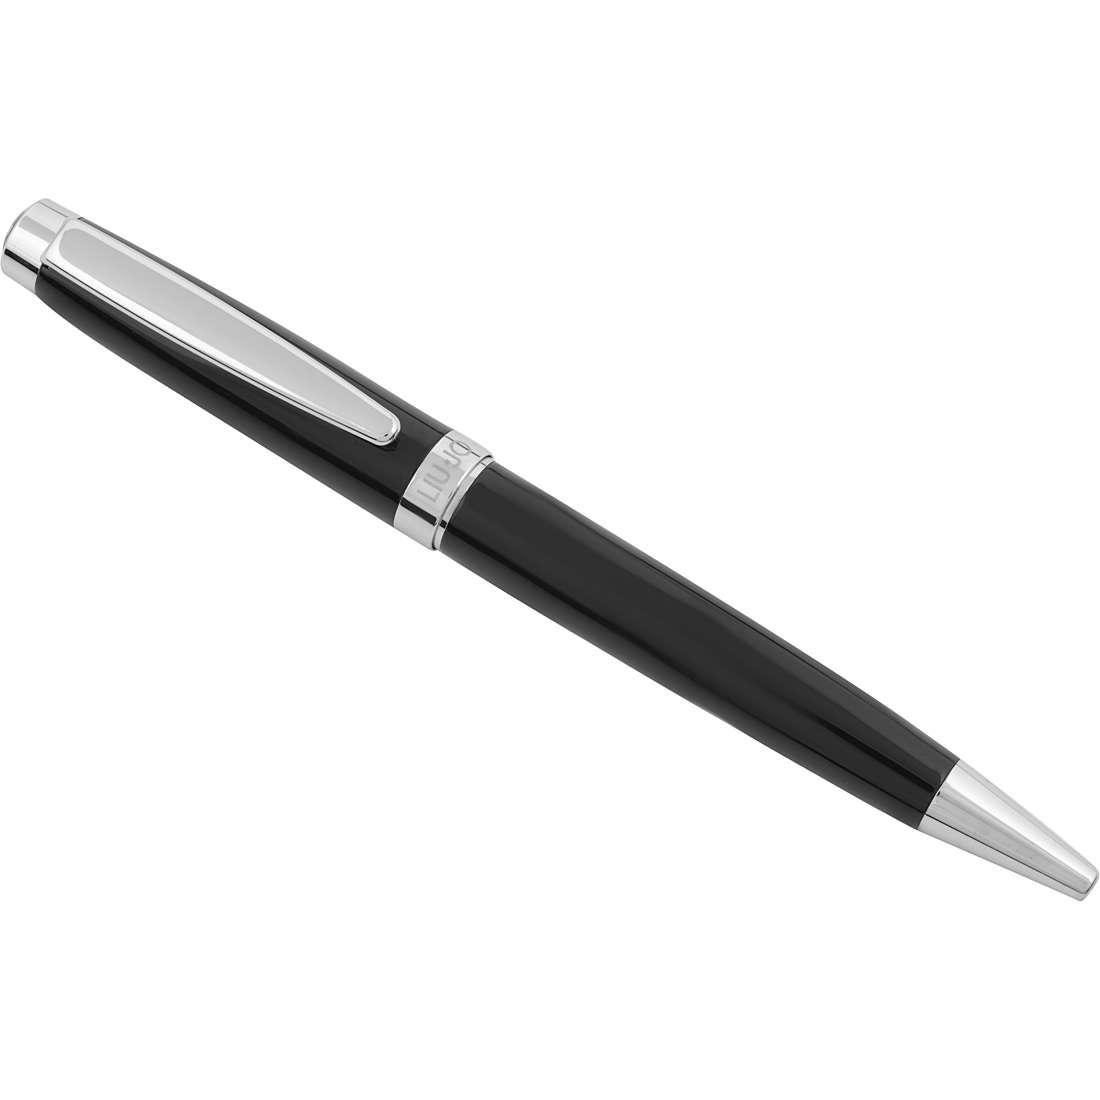 Individualisierte Stift mit Kugelschreiber von Liujo aus der Ball Pen PN012